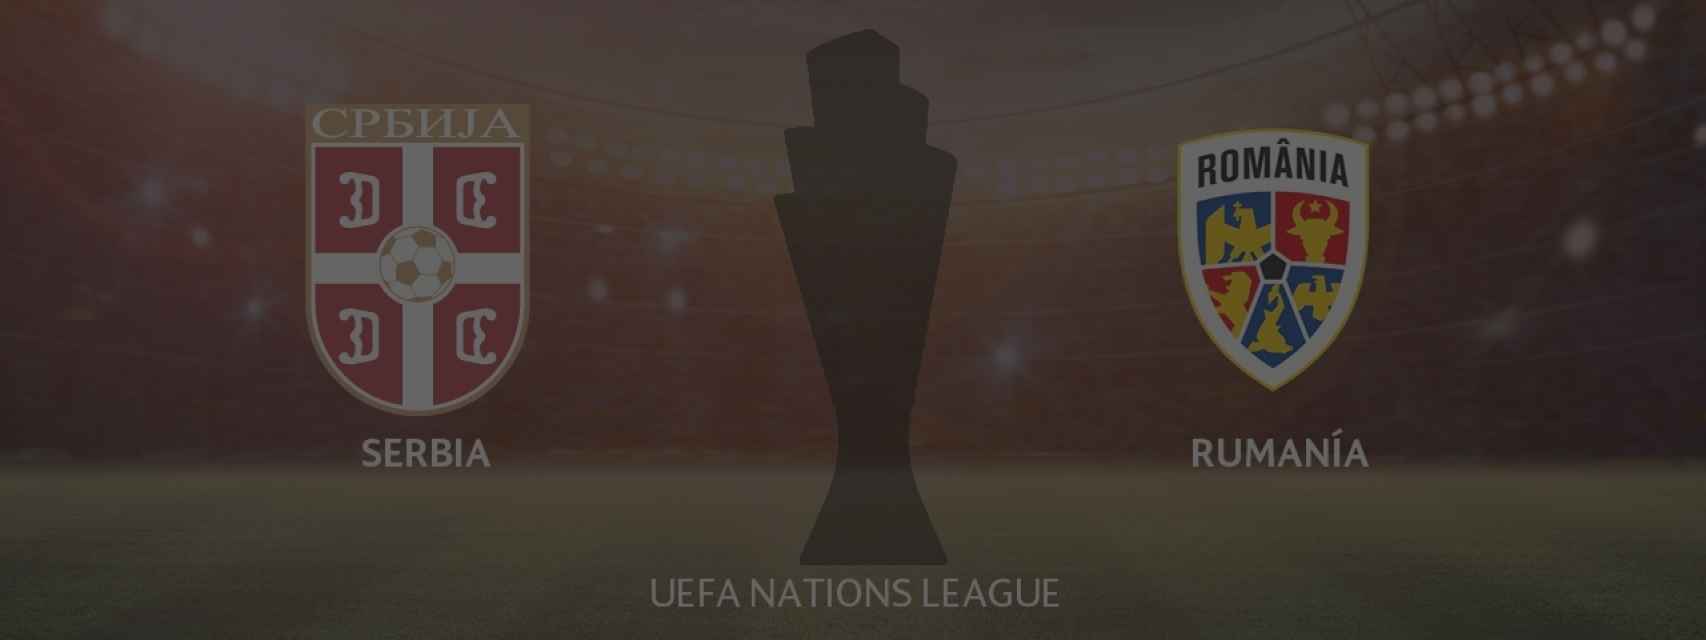 Serbia - Rumania, UEFA Nations League